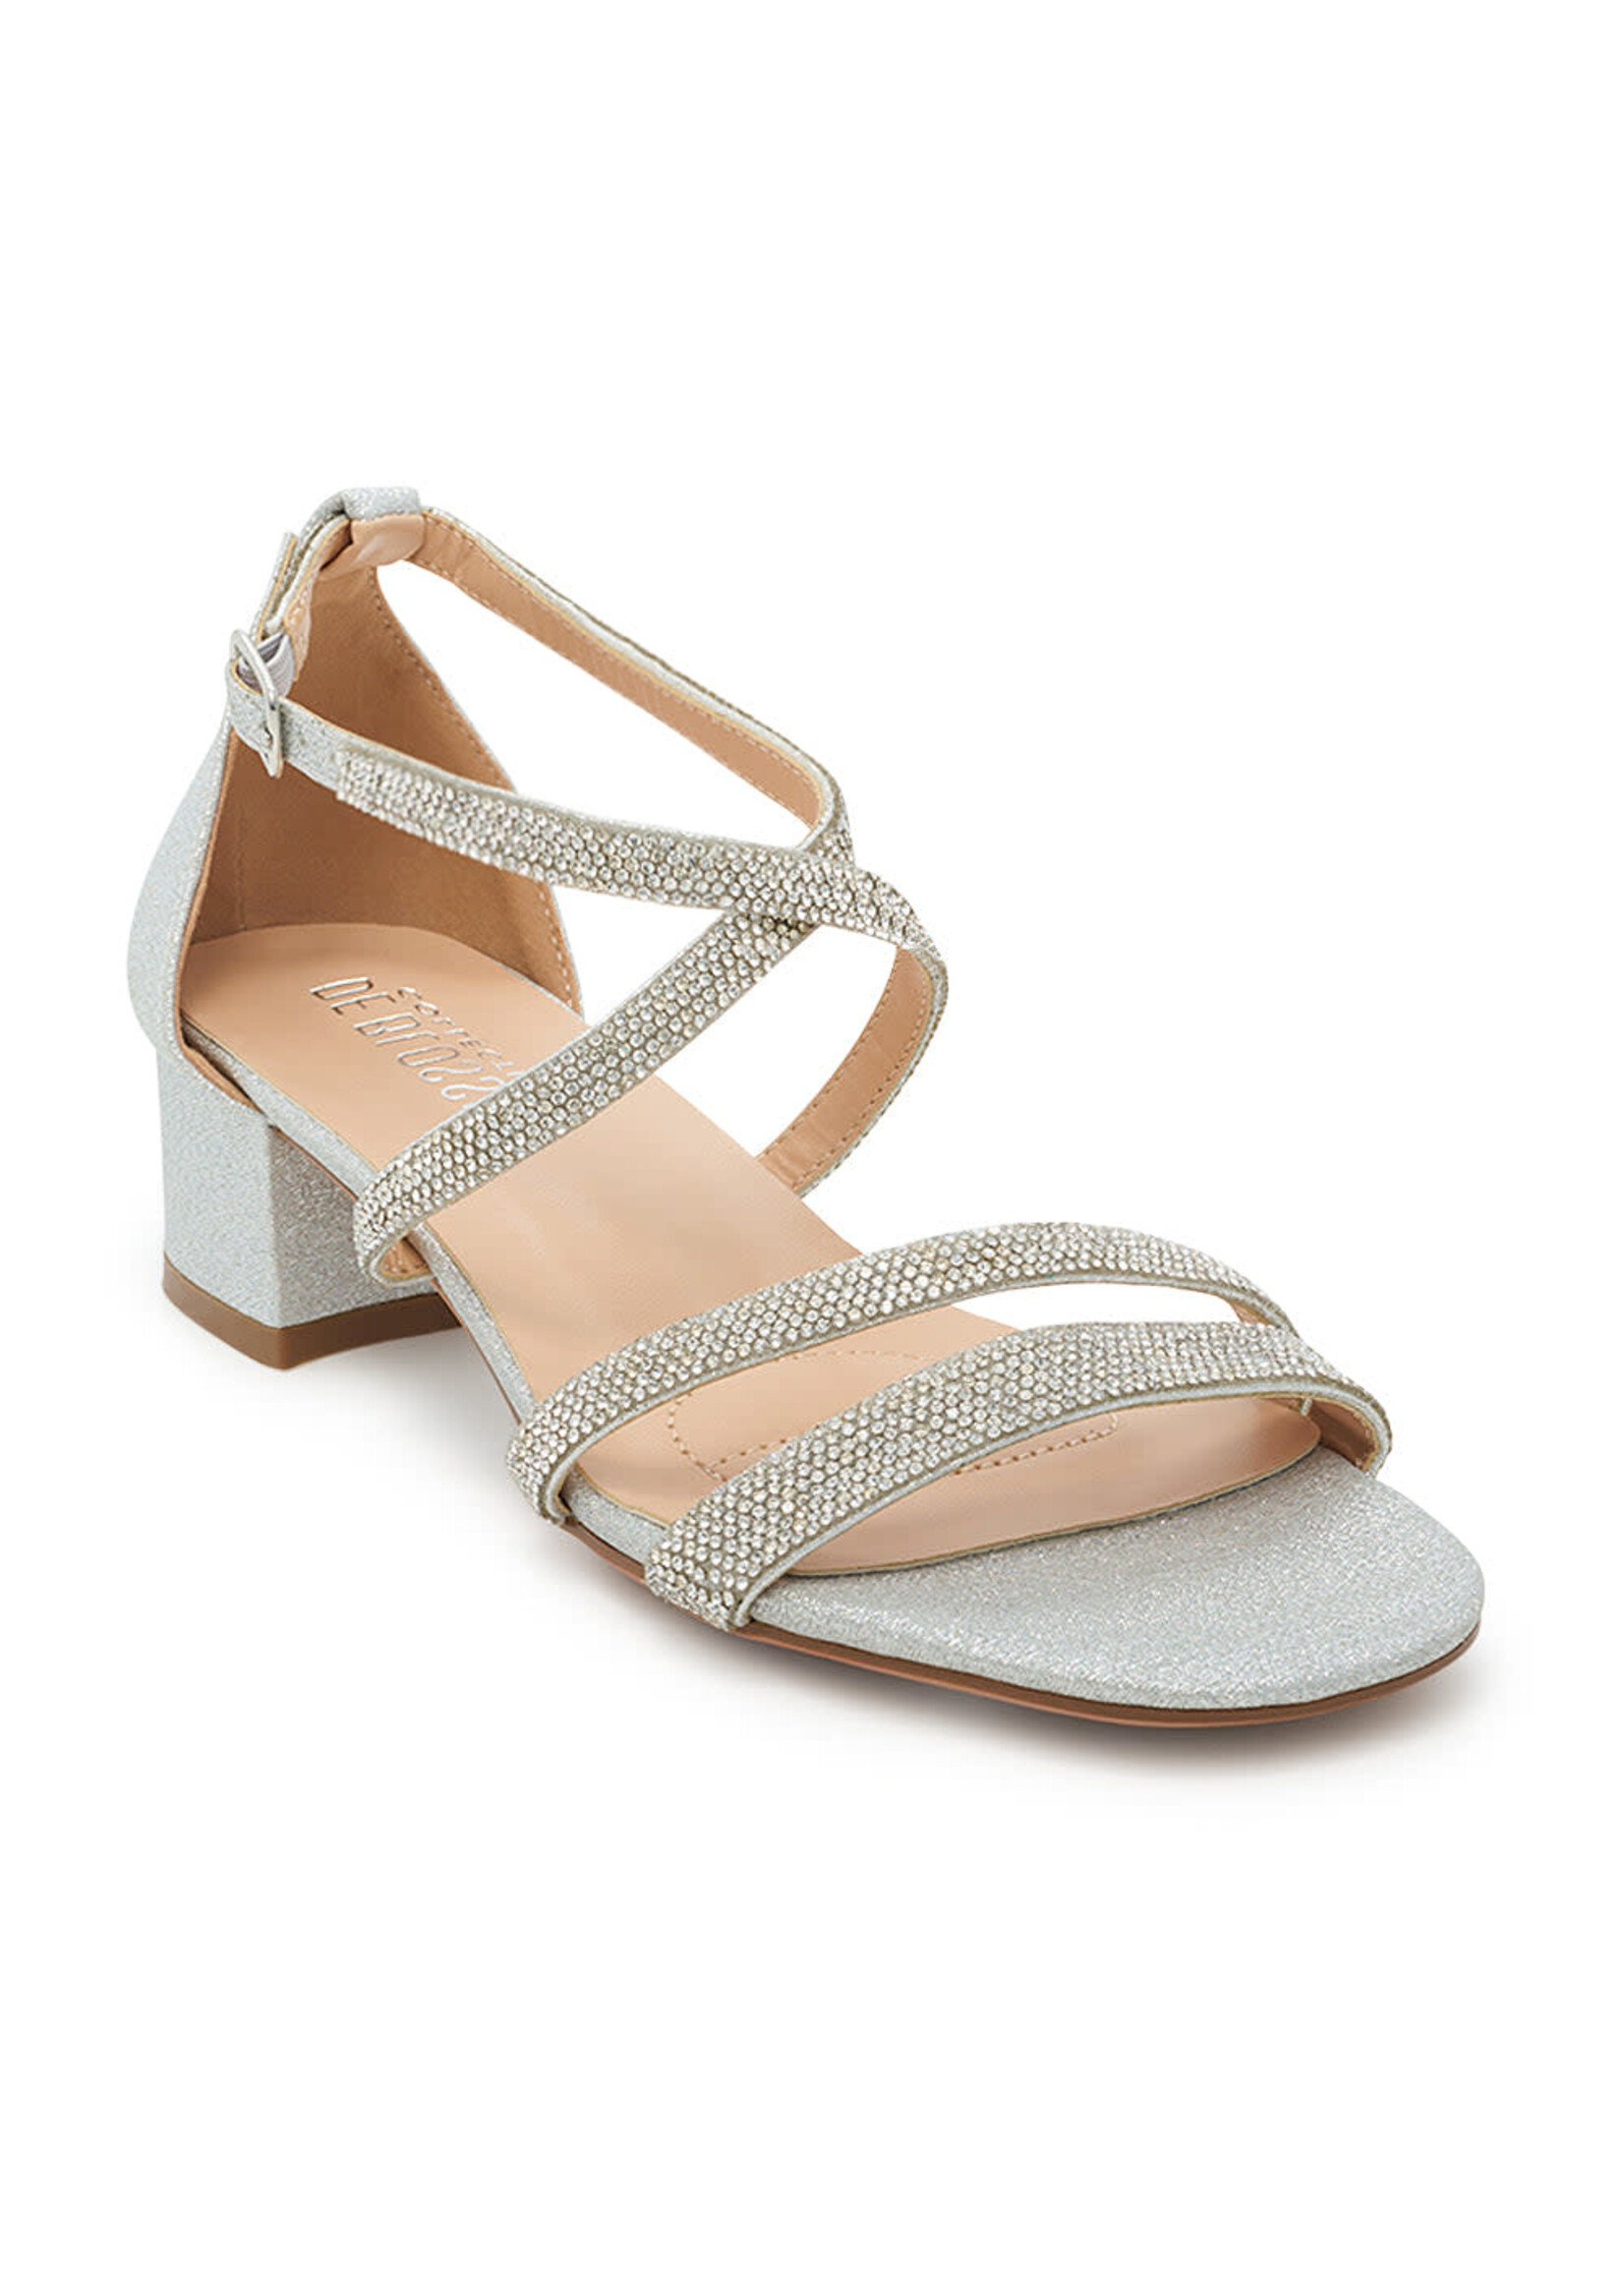 Hazel Evening Sandal in Silver Iridescent Shimmer  1.5" Heel